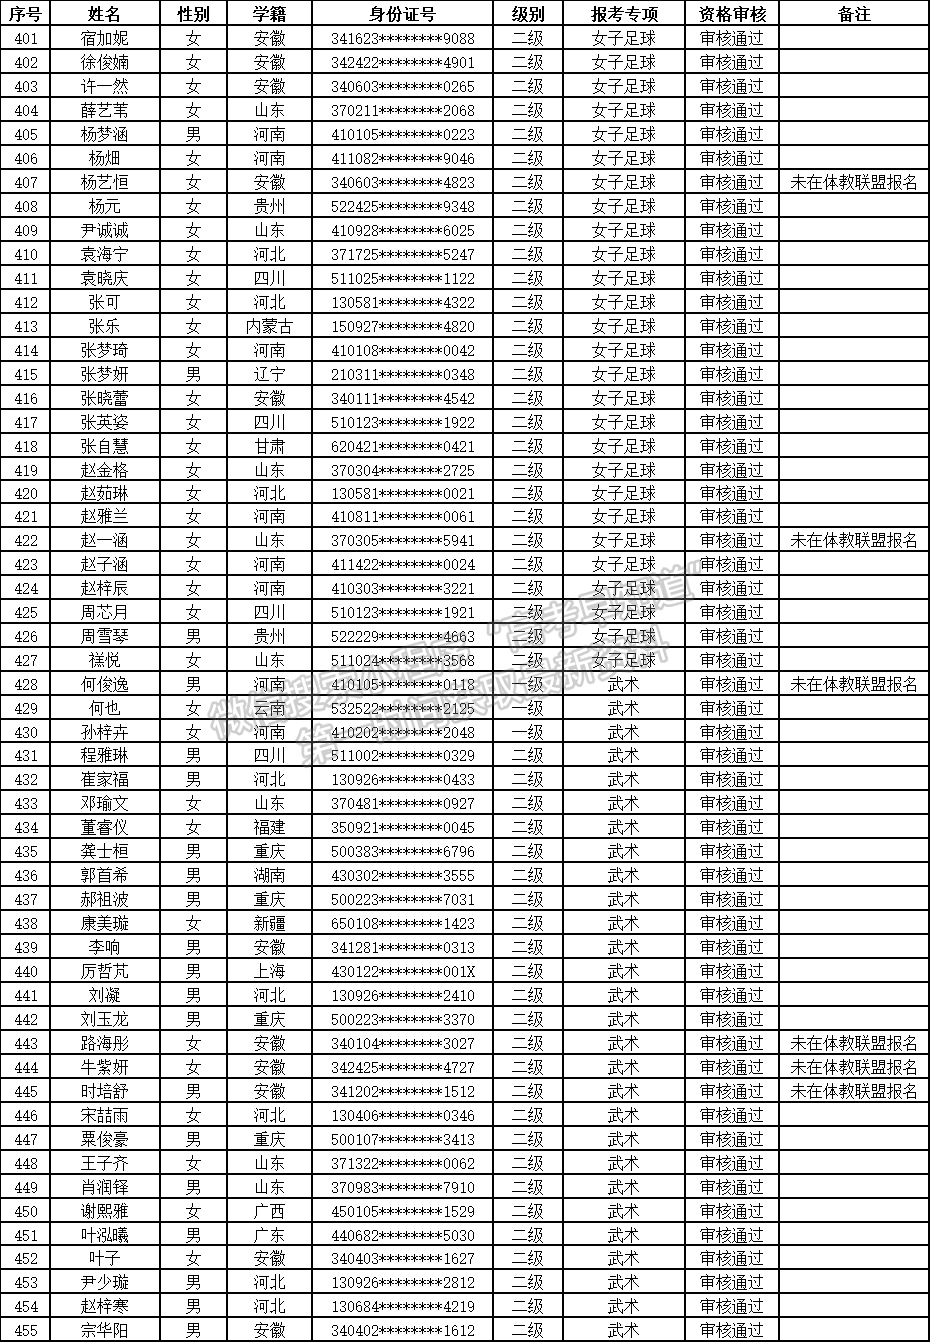 河南财经政法大学2021年高水平运动队足球与武术（套路）项目资格审核通过名单公示